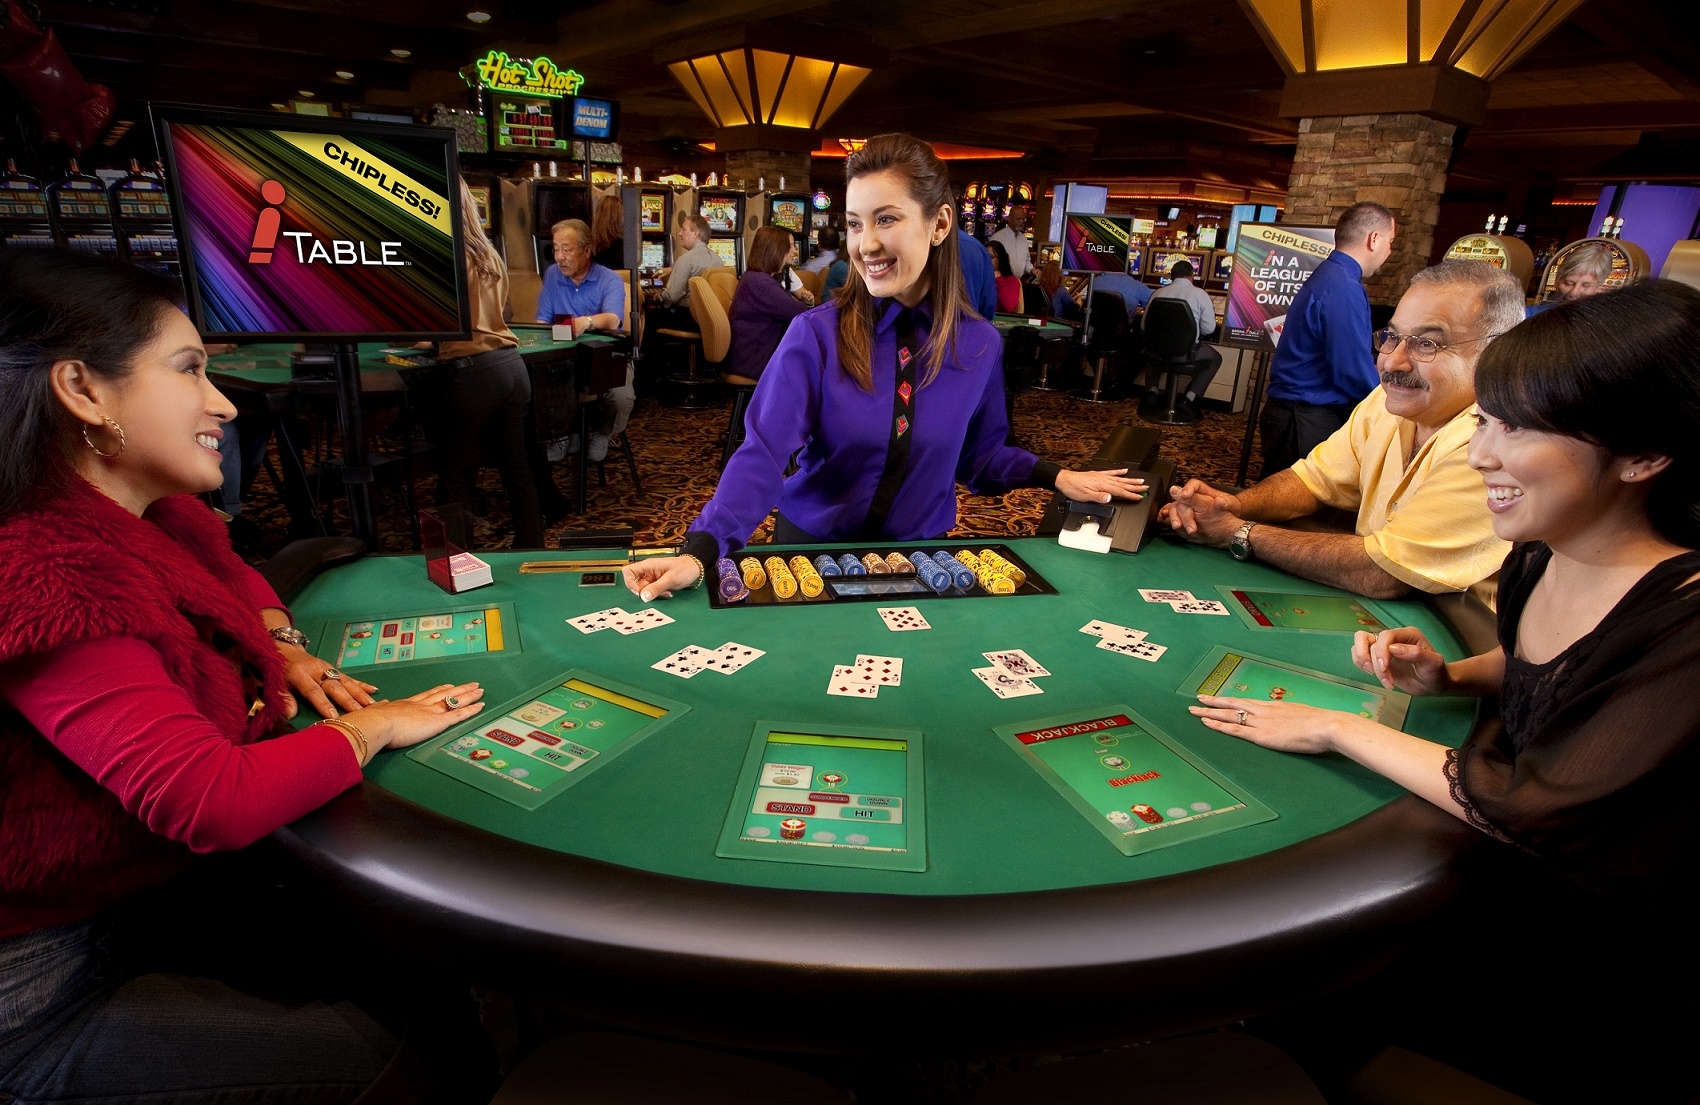 Gambler referred online casino интернет казино играть онлайн россия